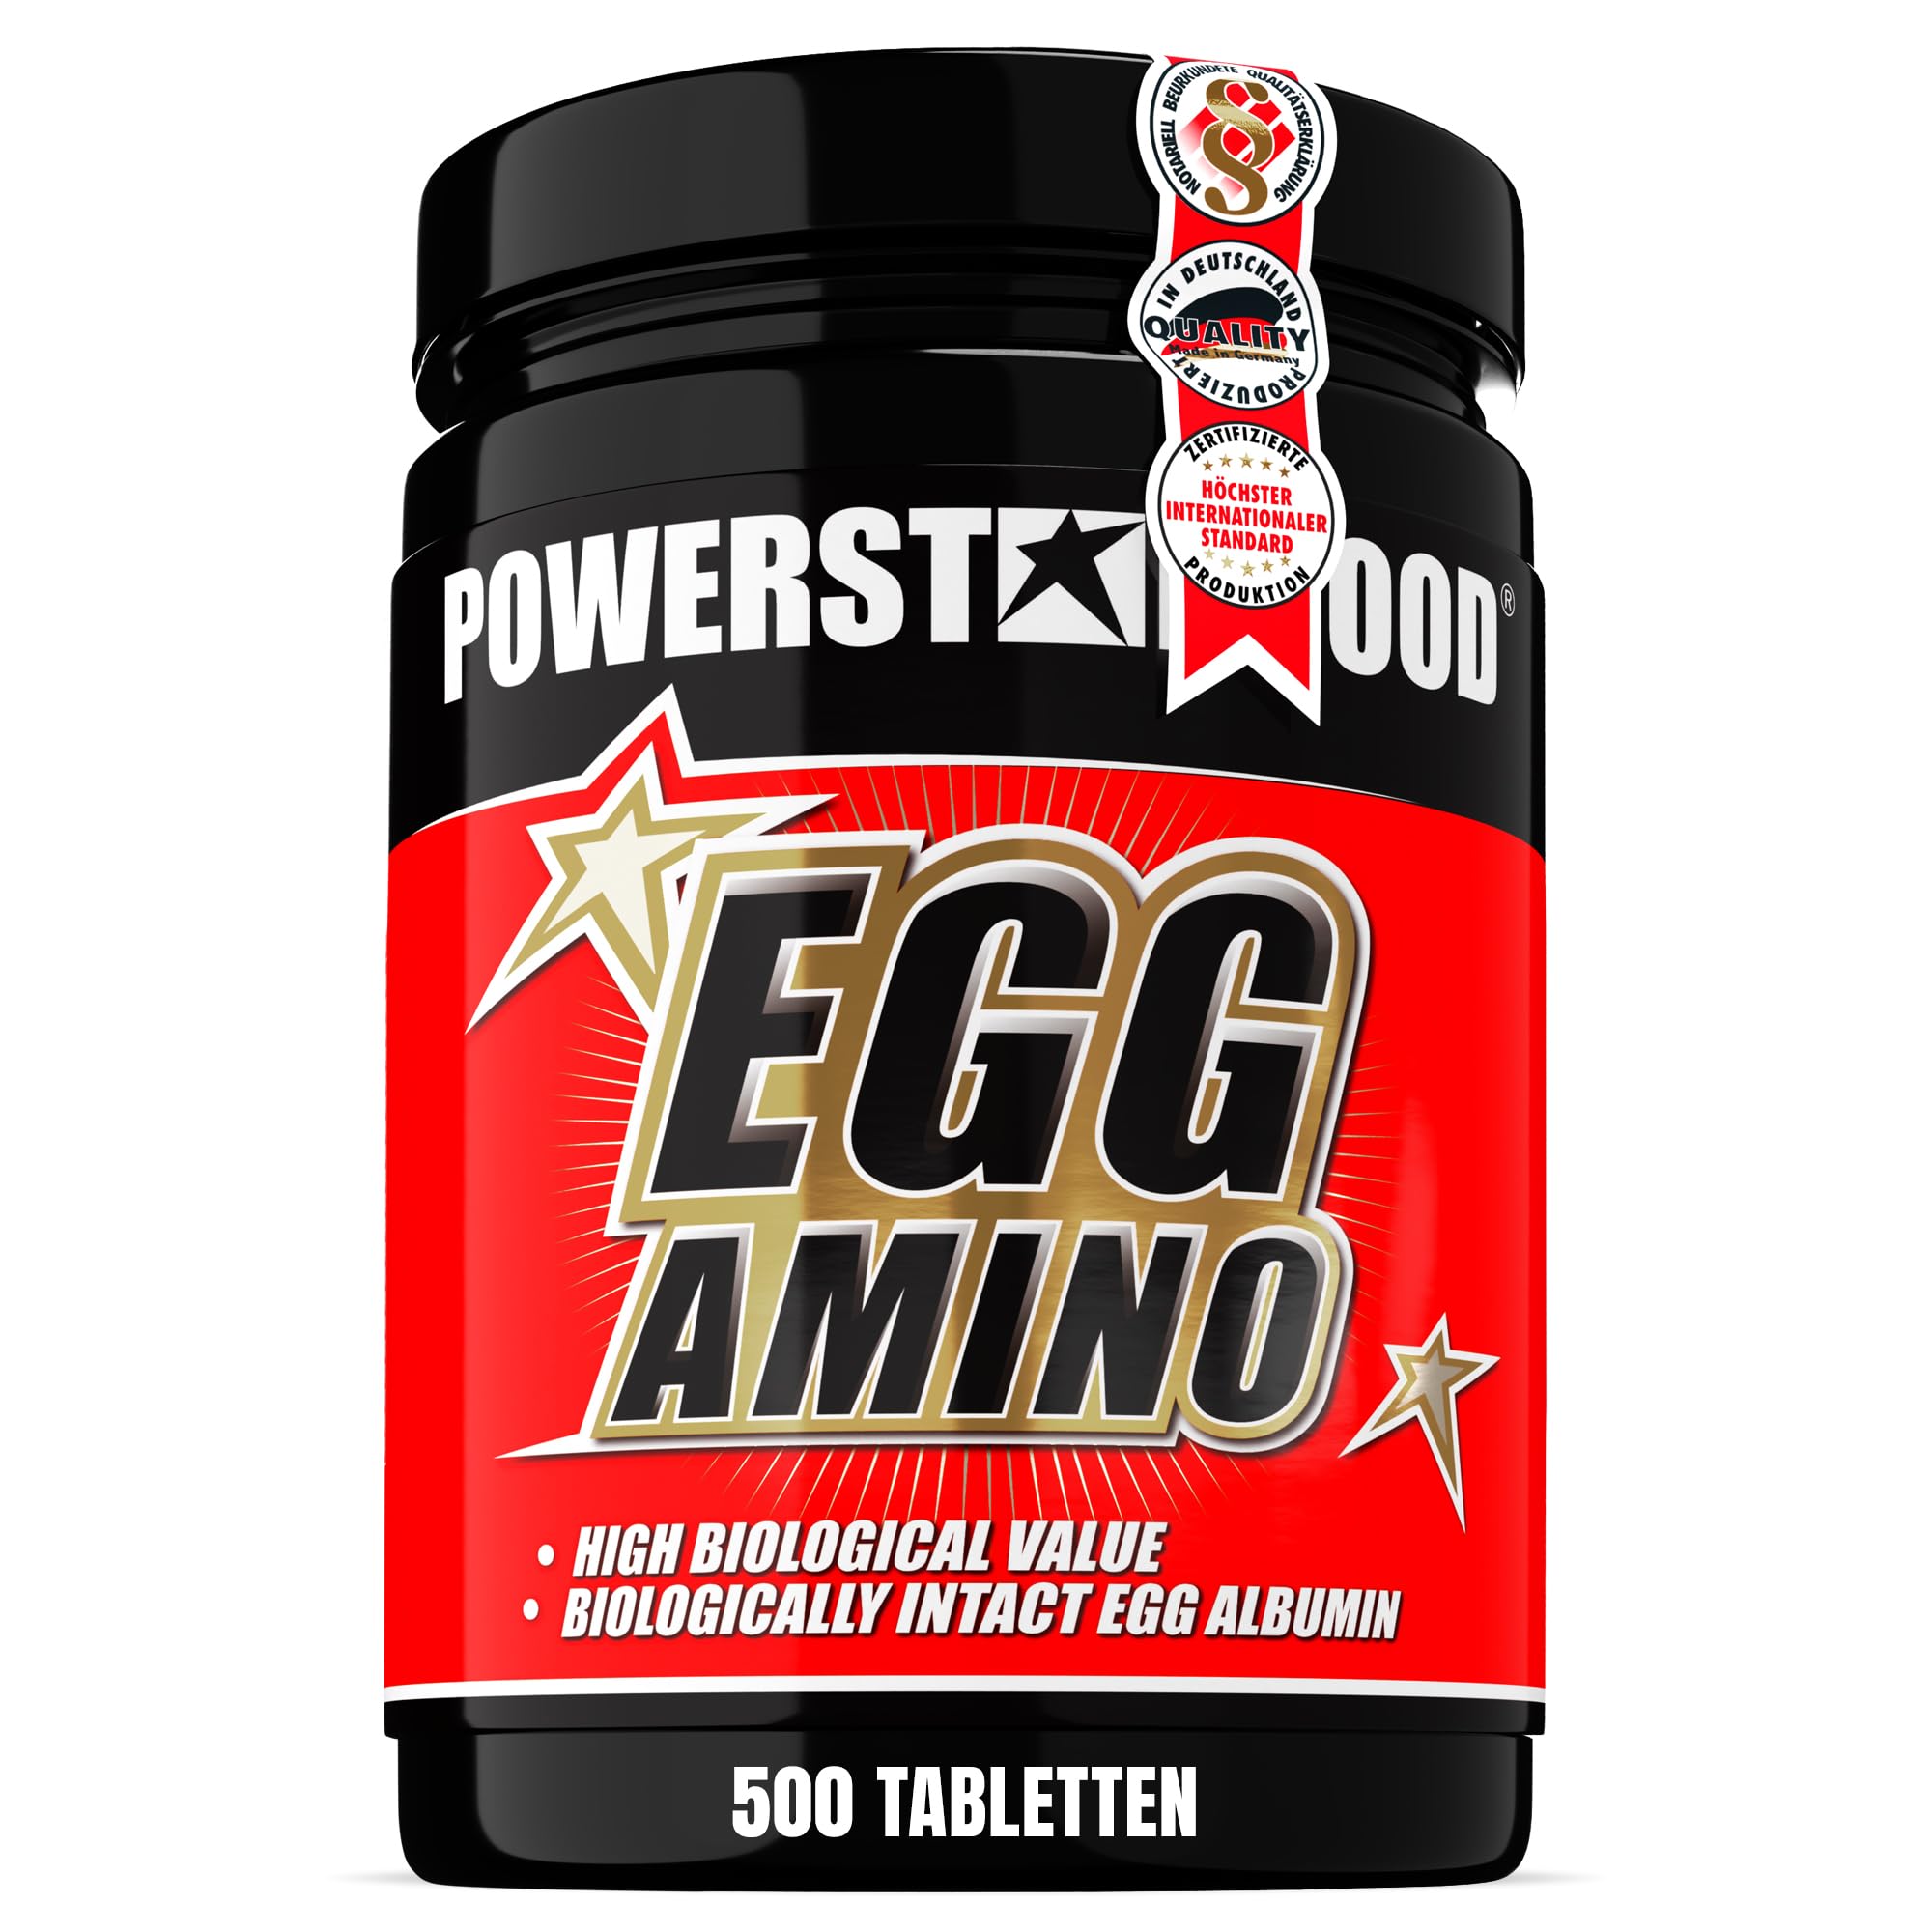 Powerstar EGG AMINO reines Ei-Albumin | Aminosäuren für Training & Muskelaufbau | 500 Tabletten | 1.000mg pro Tablette | Laktosefrei, glutenfrei | Hohe Biologische Wertigkeit | Deutsche Herstellung